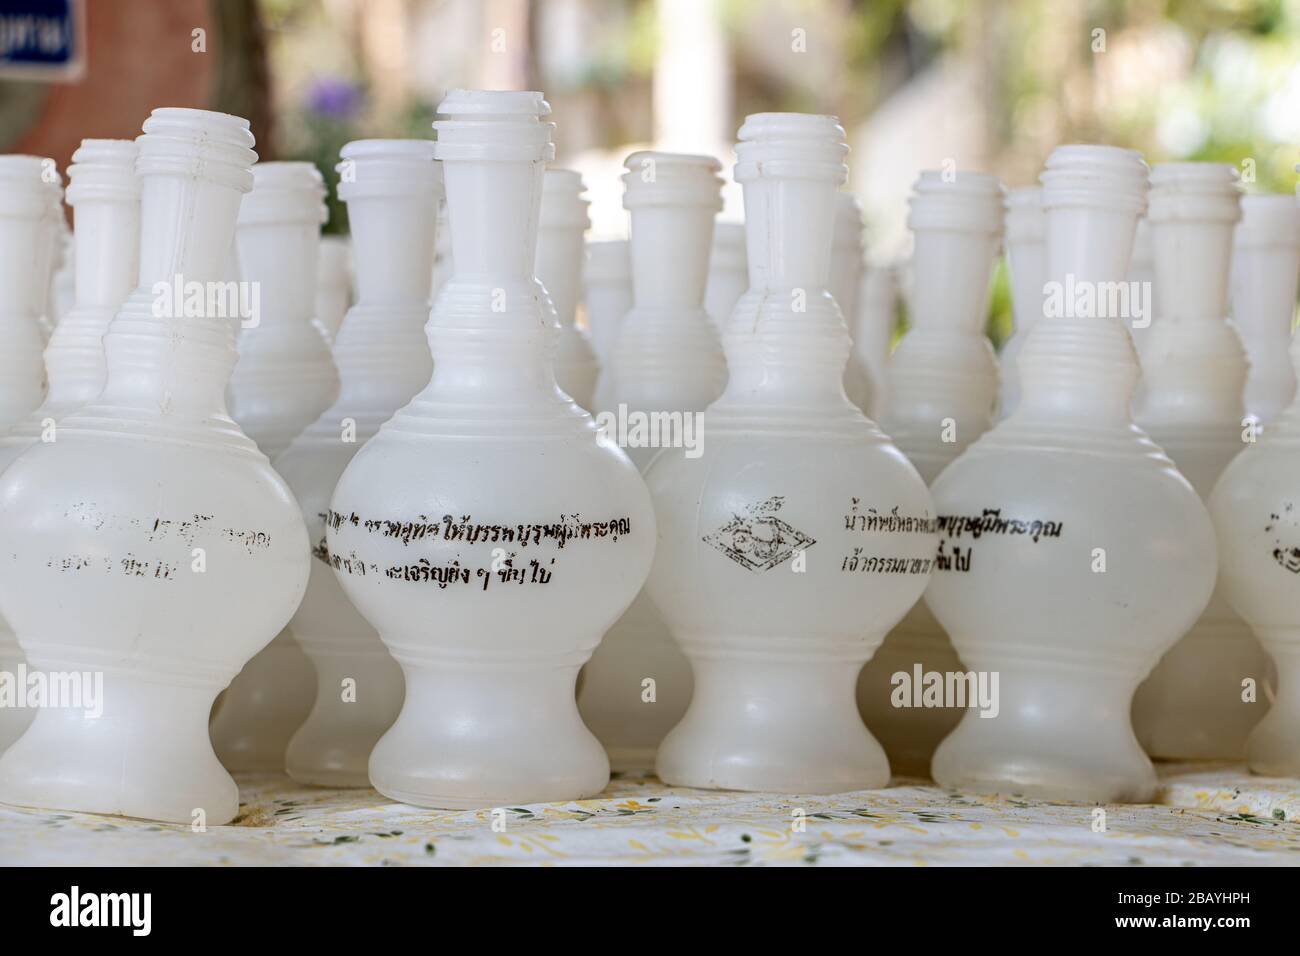 NAKHON PATHOM, THAILAND, MAR 14 2020, EINE Zeile weißer kleiner Flaschen zum Gießen von Wasser in die Schüssel für gutes Karma, buddhistischer Tempel, Wat Samphran, Thailan Stockfoto